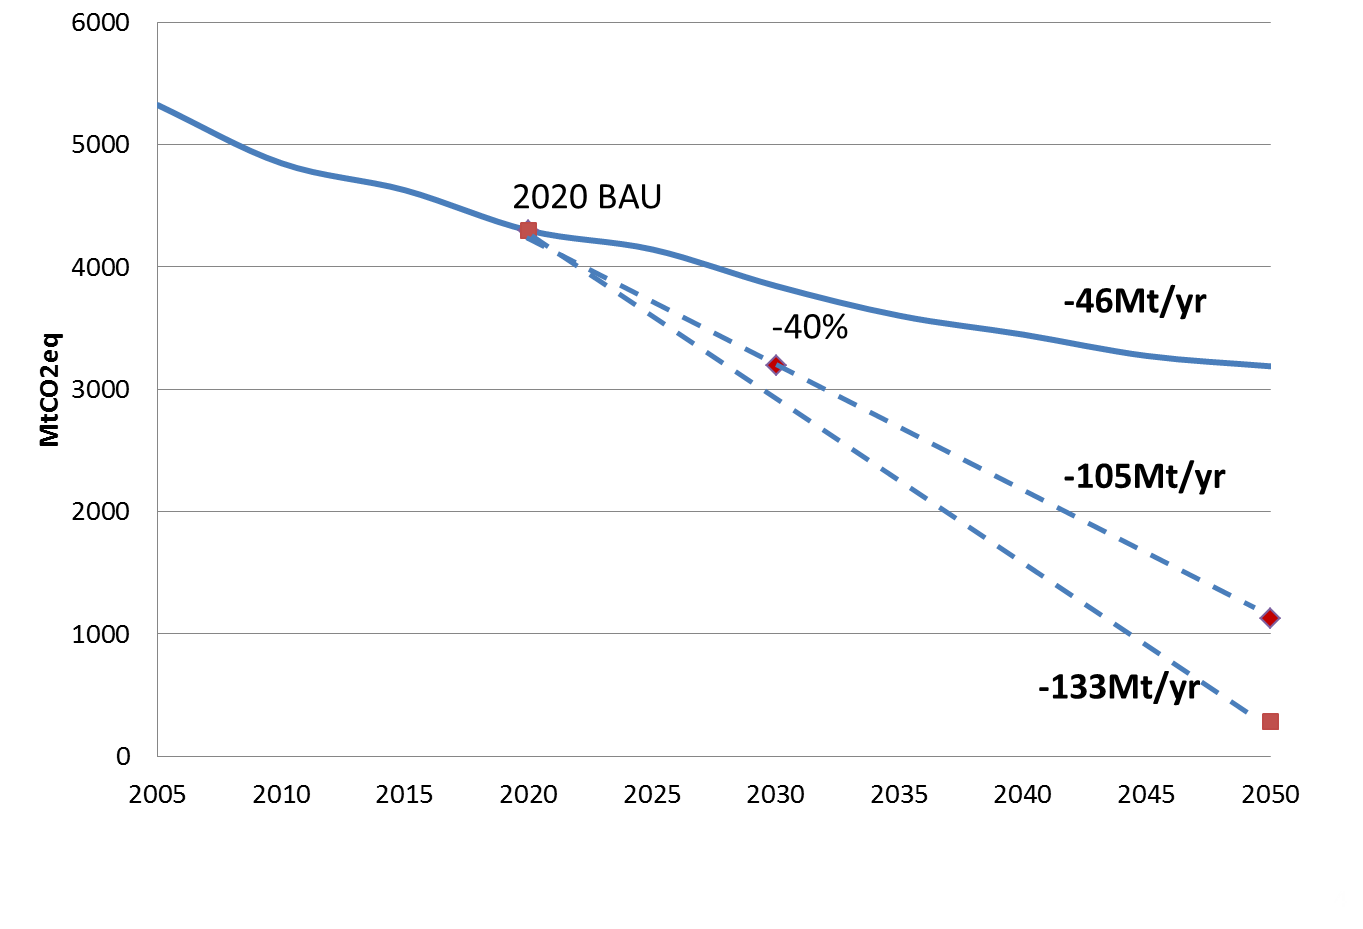 Figure 2. Emissions de GES historiques et scénario de statu quo (BAU) dans l’UE par rapport aux objectifs 2030 et de long terme (-80 à -95 % en 2050)